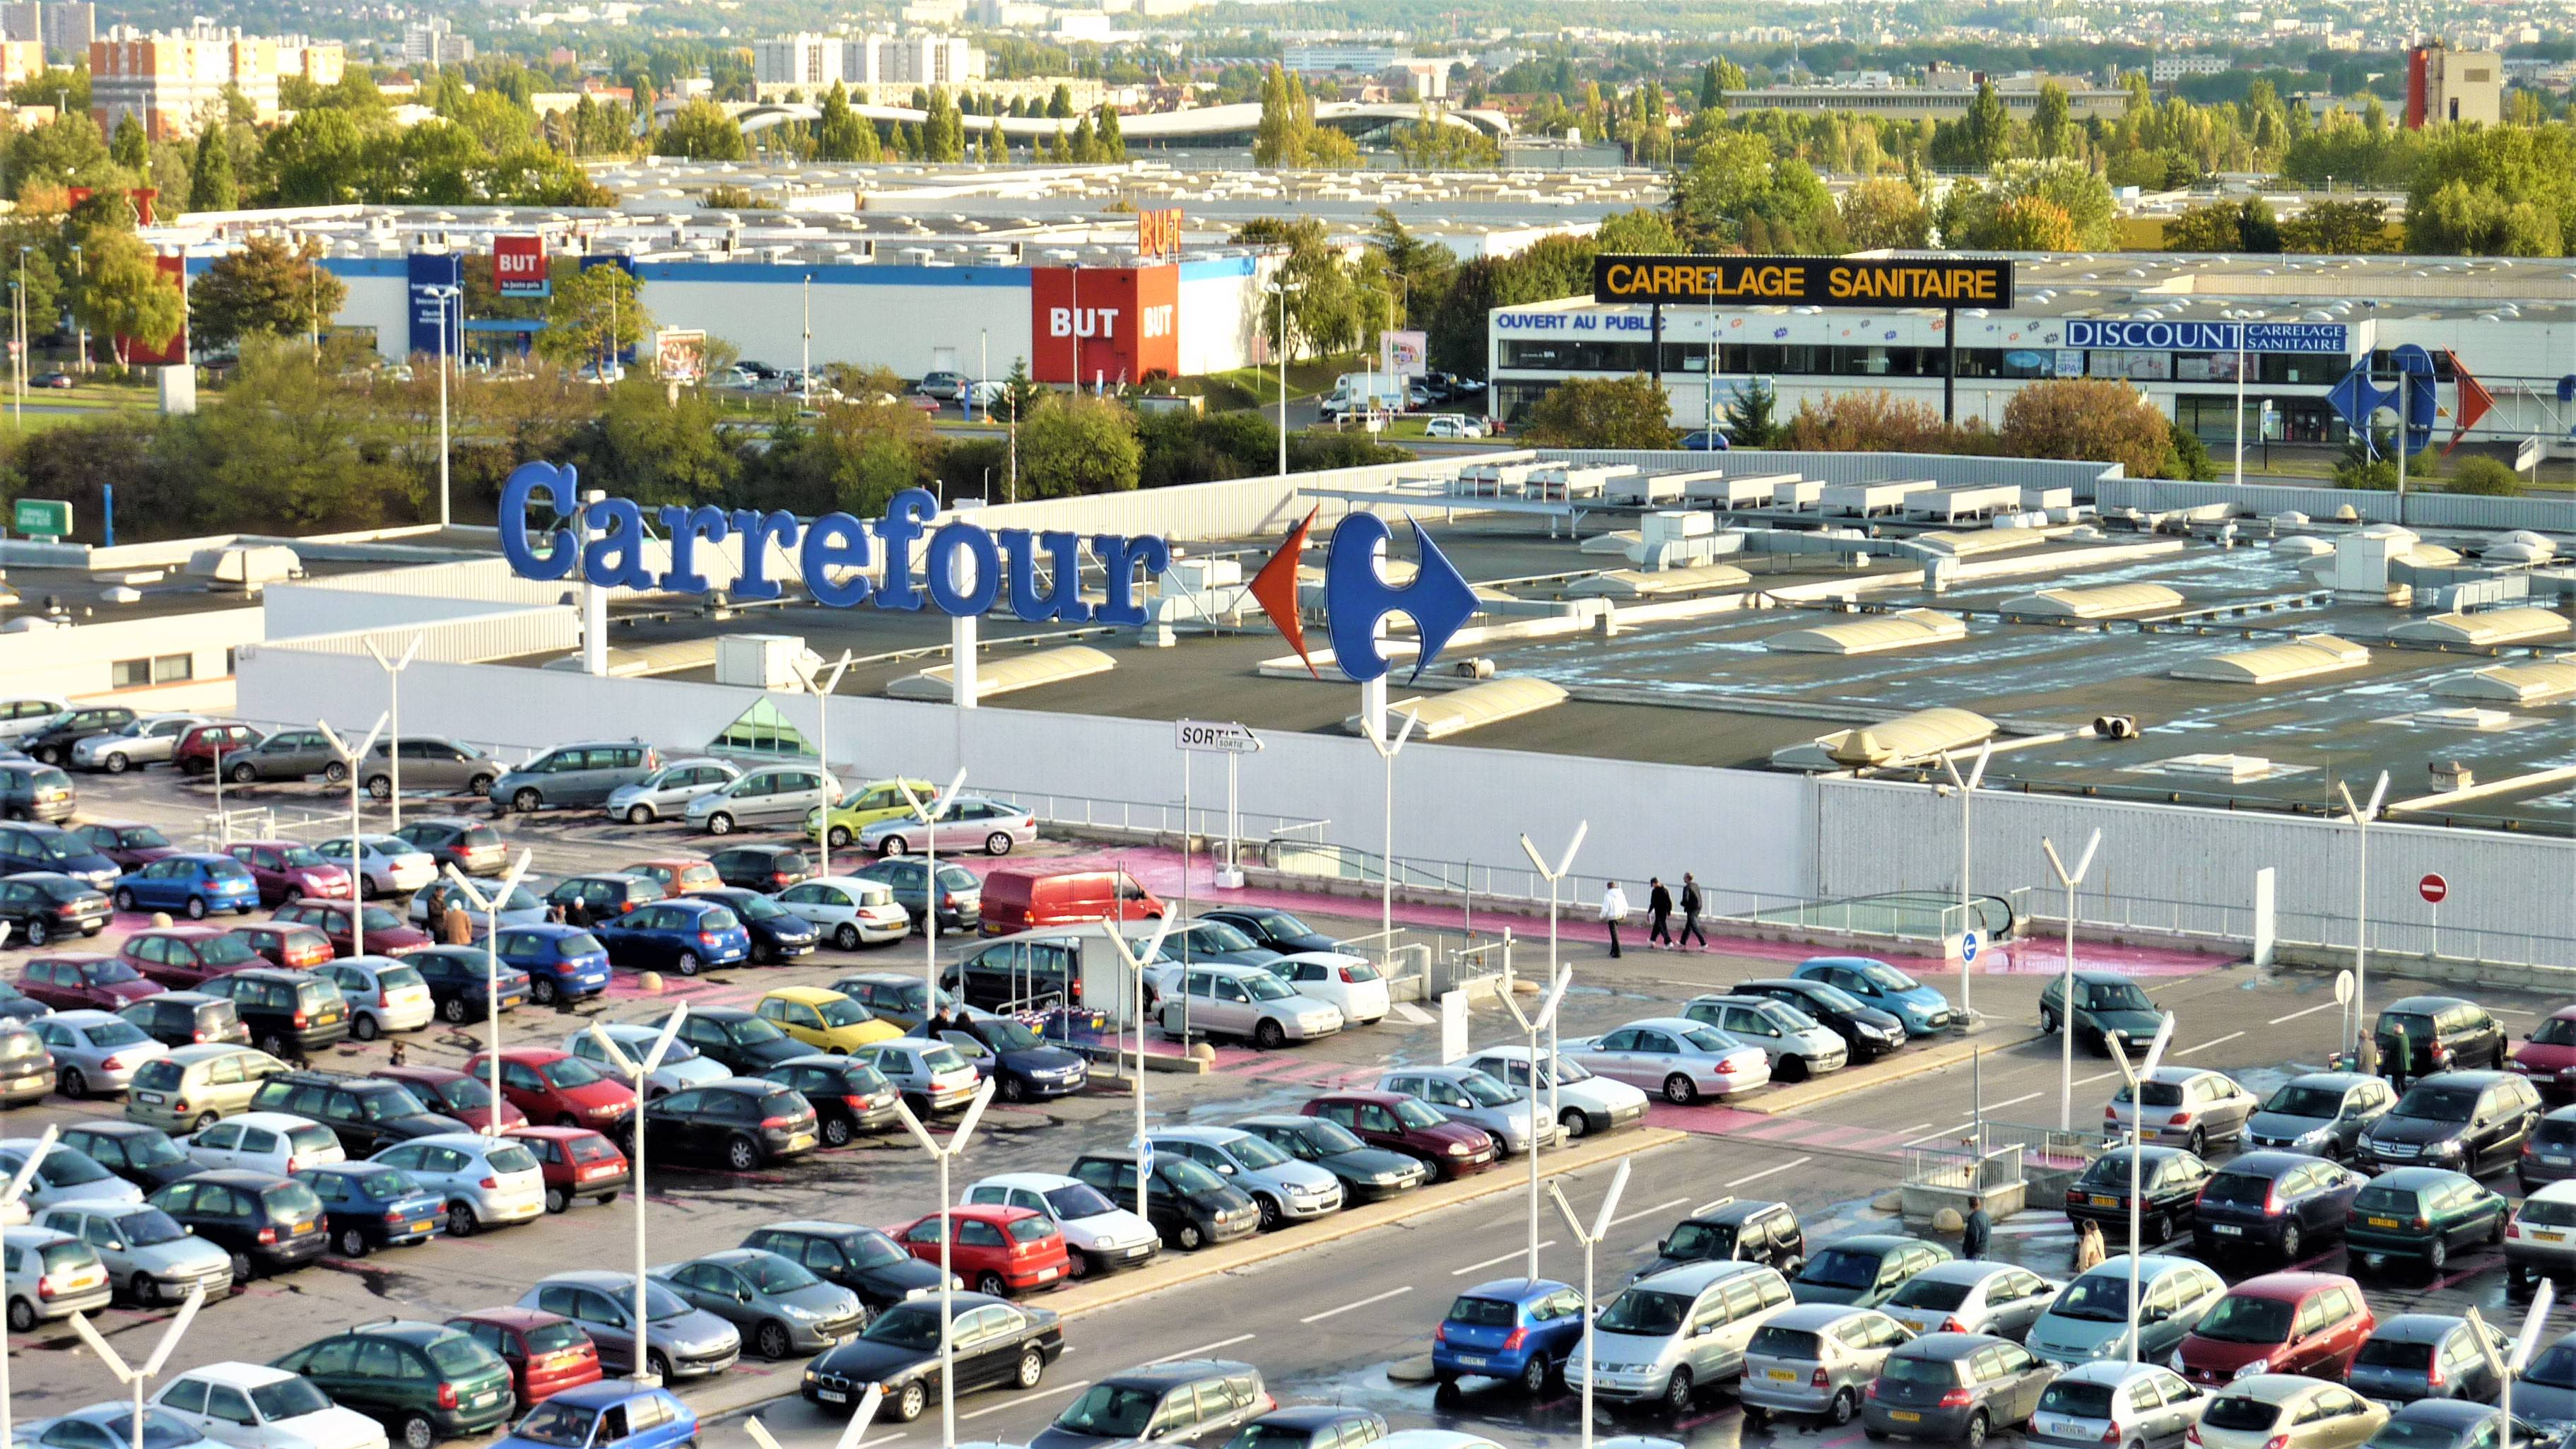 Et overbliksbillede viser en parkeringsplan på taget af en Carrefour-bygning